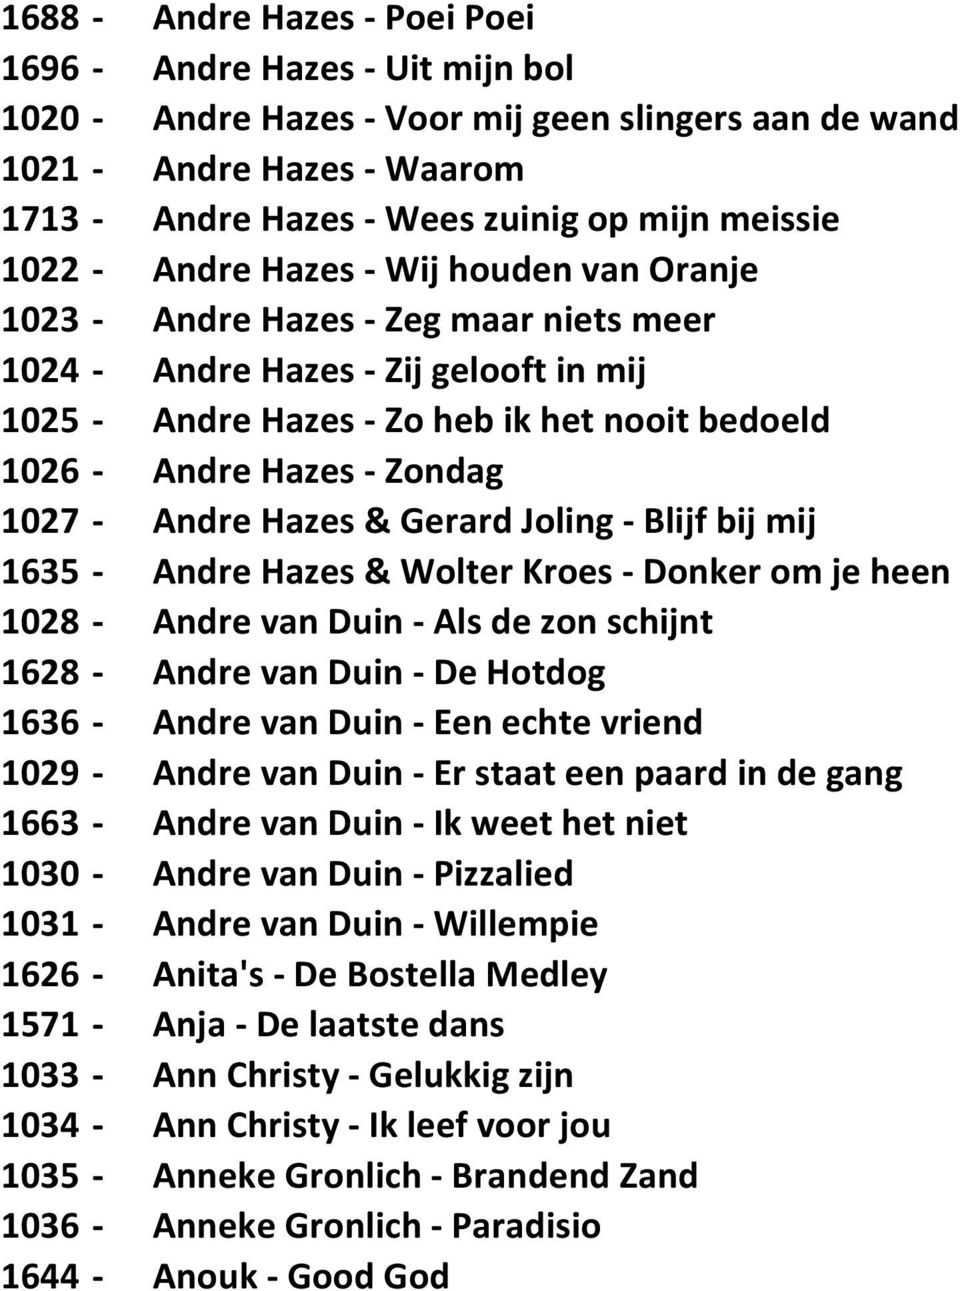 Zondag 1027 - Andre Hazes & Gerard Joling - Blijf bij mij 1635 - Andre Hazes & Wolter Kroes - Donker om je heen 1028 - Andre van Duin - Als de zon schijnt 1628 - Andre van Duin - De Hotdog 1636 -